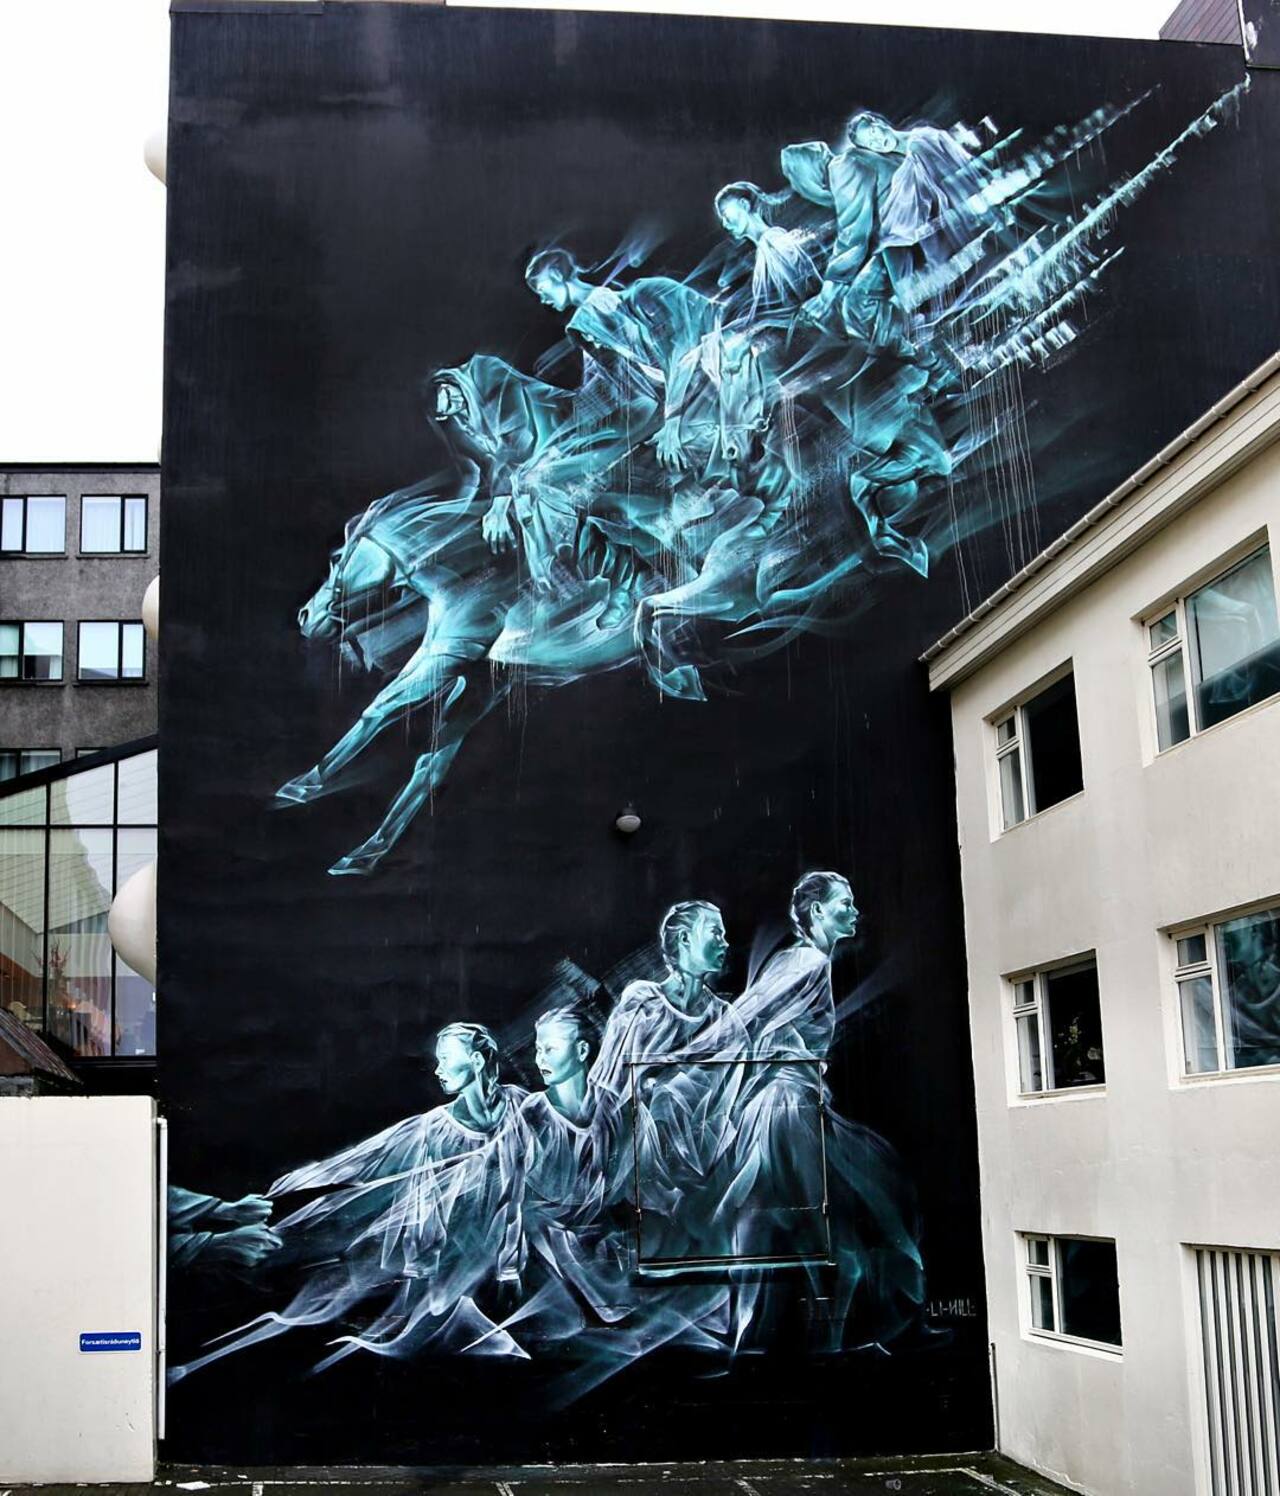 RT @thx2111: Li-Hill unveils a beautiful mural in Reykjavik, Iceland. #StreetArt #Graffiti #Mural http://t.co/V5uqBX1UoP